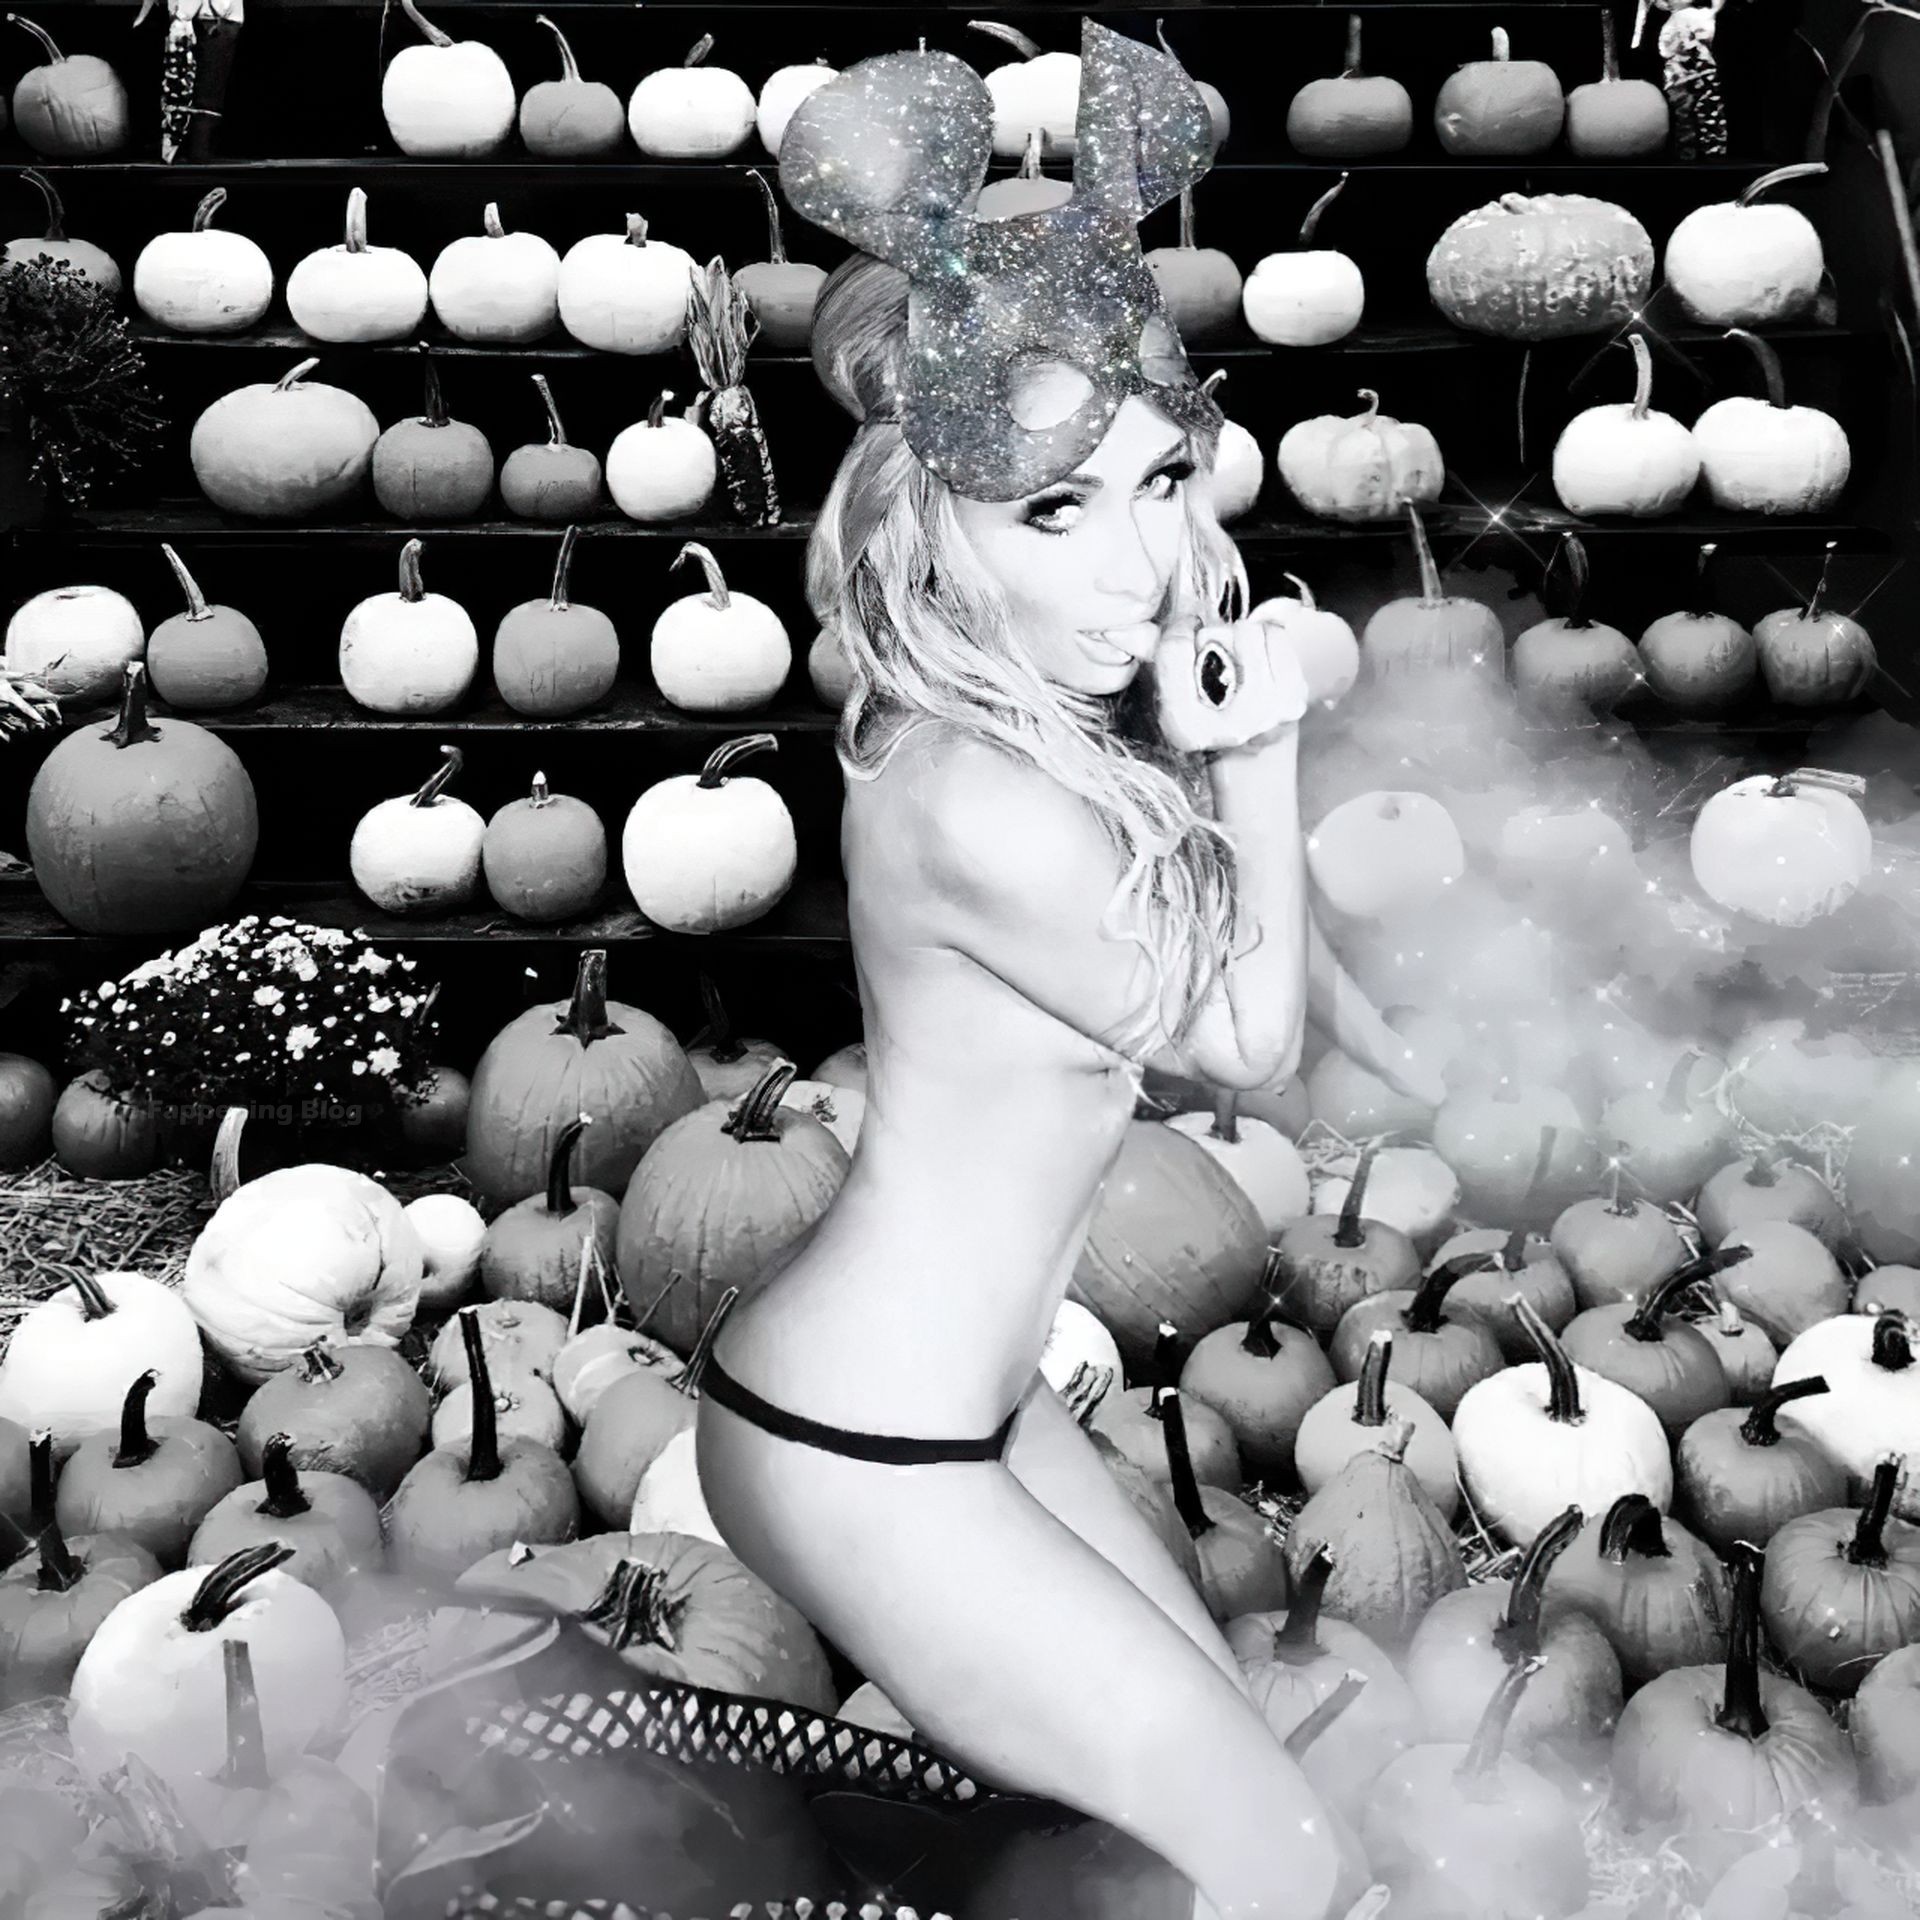 Paris Hilton Topless (2 New Photos)